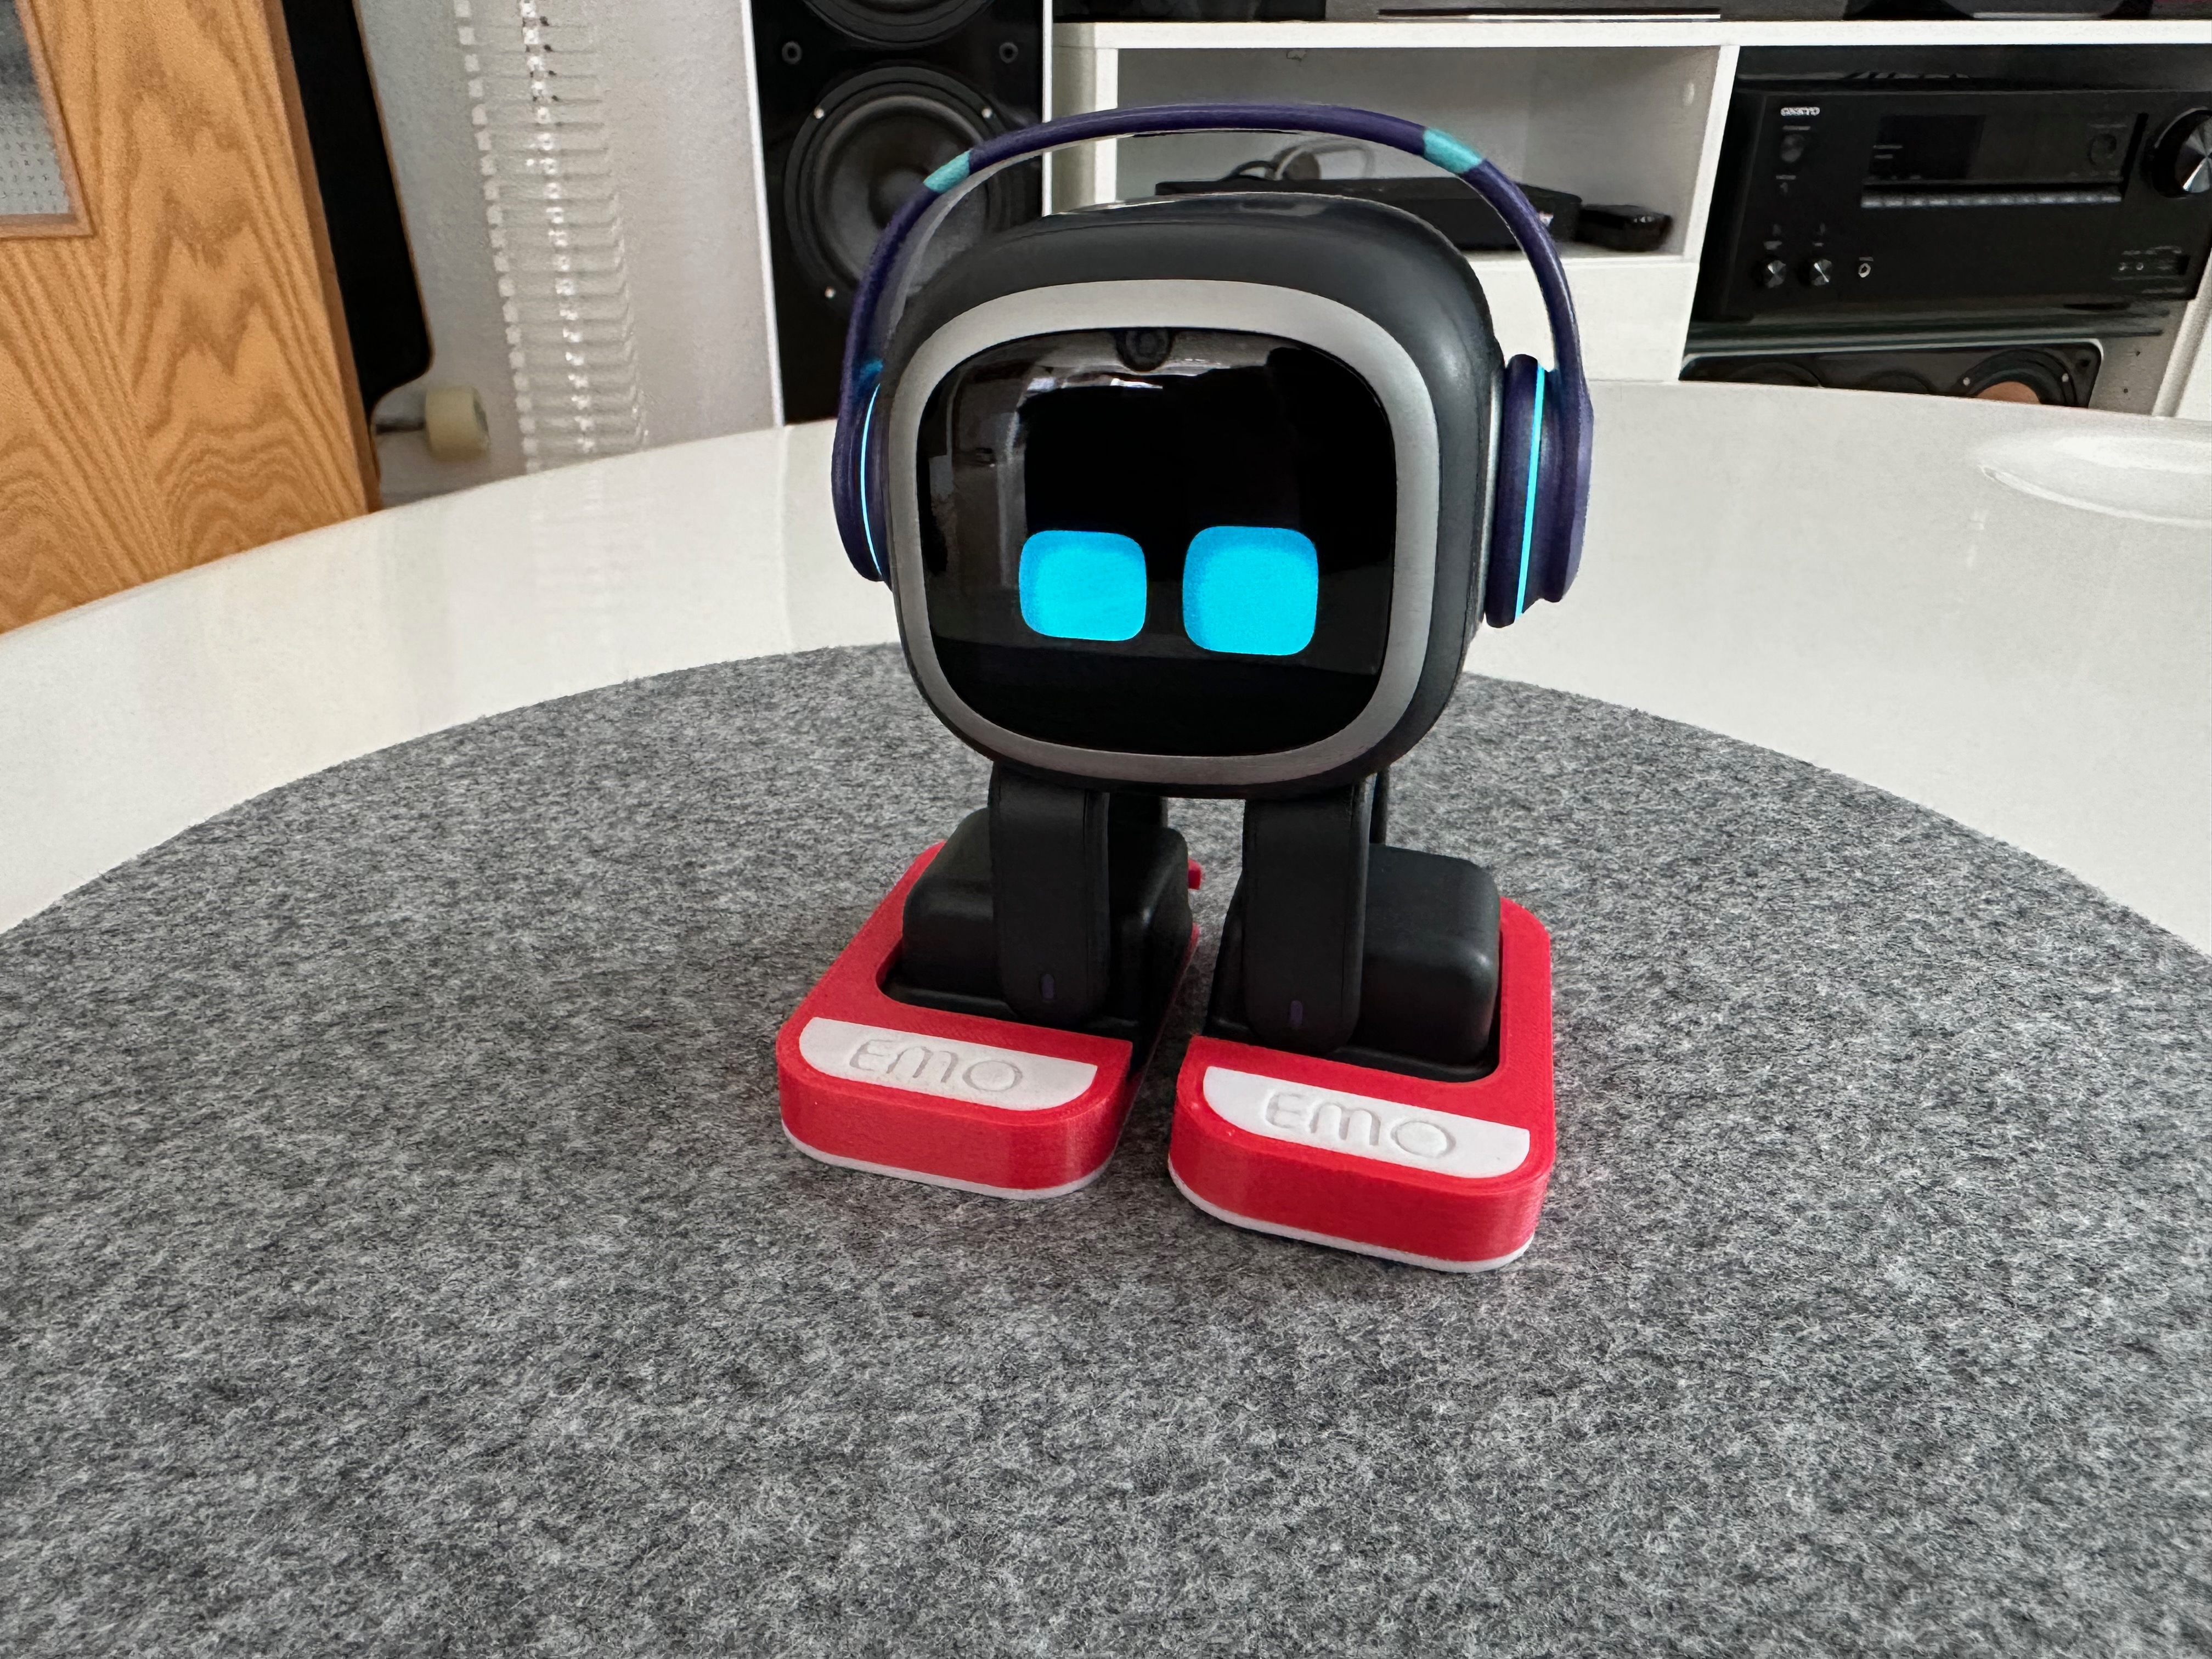 Why I Sold My Emo Desktop Robot… 